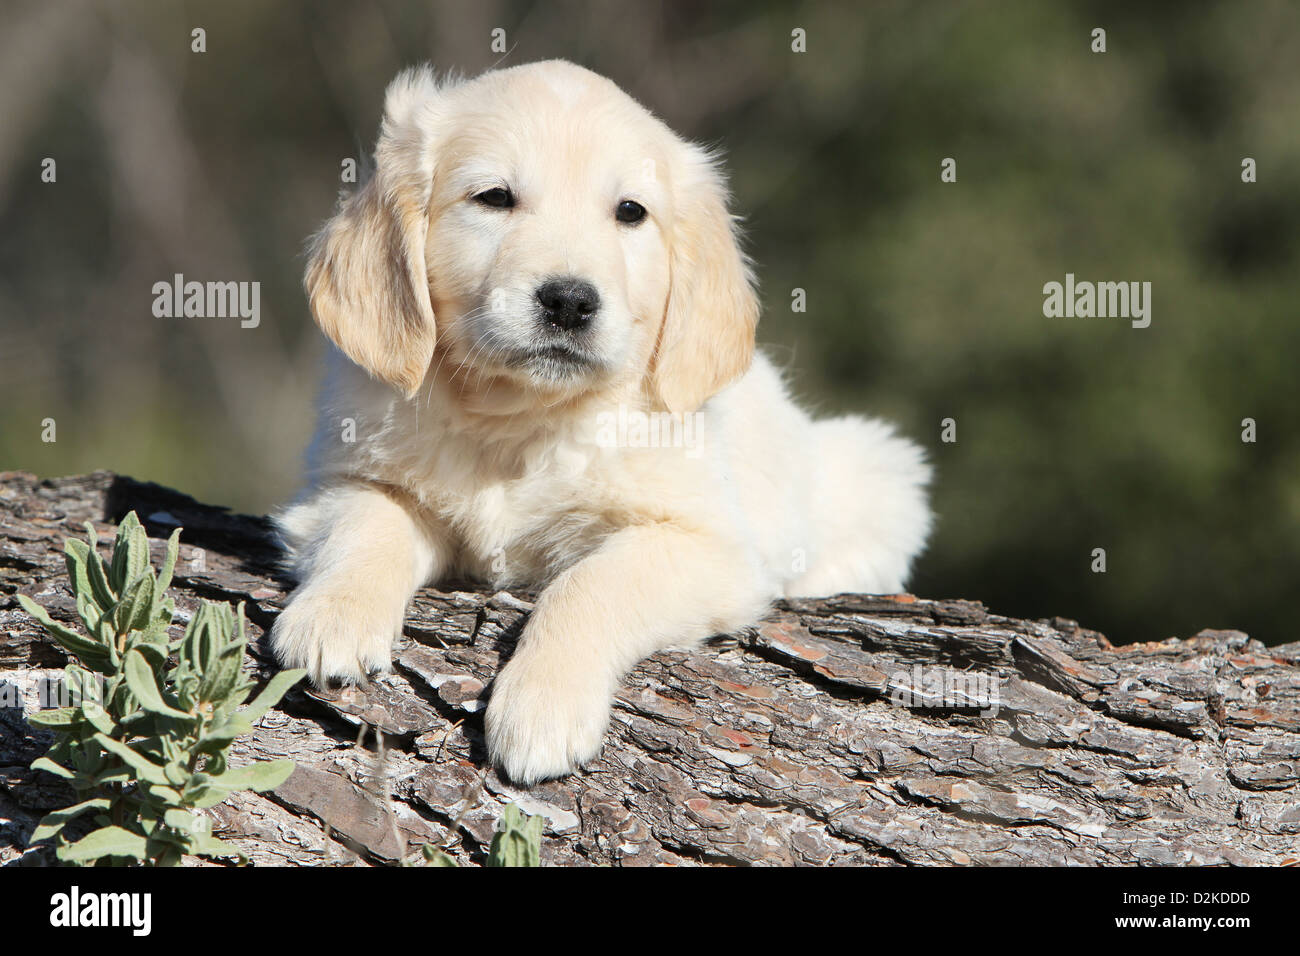 Cane Golden Retriever cucciolo giacente su di un legno Foto Stock